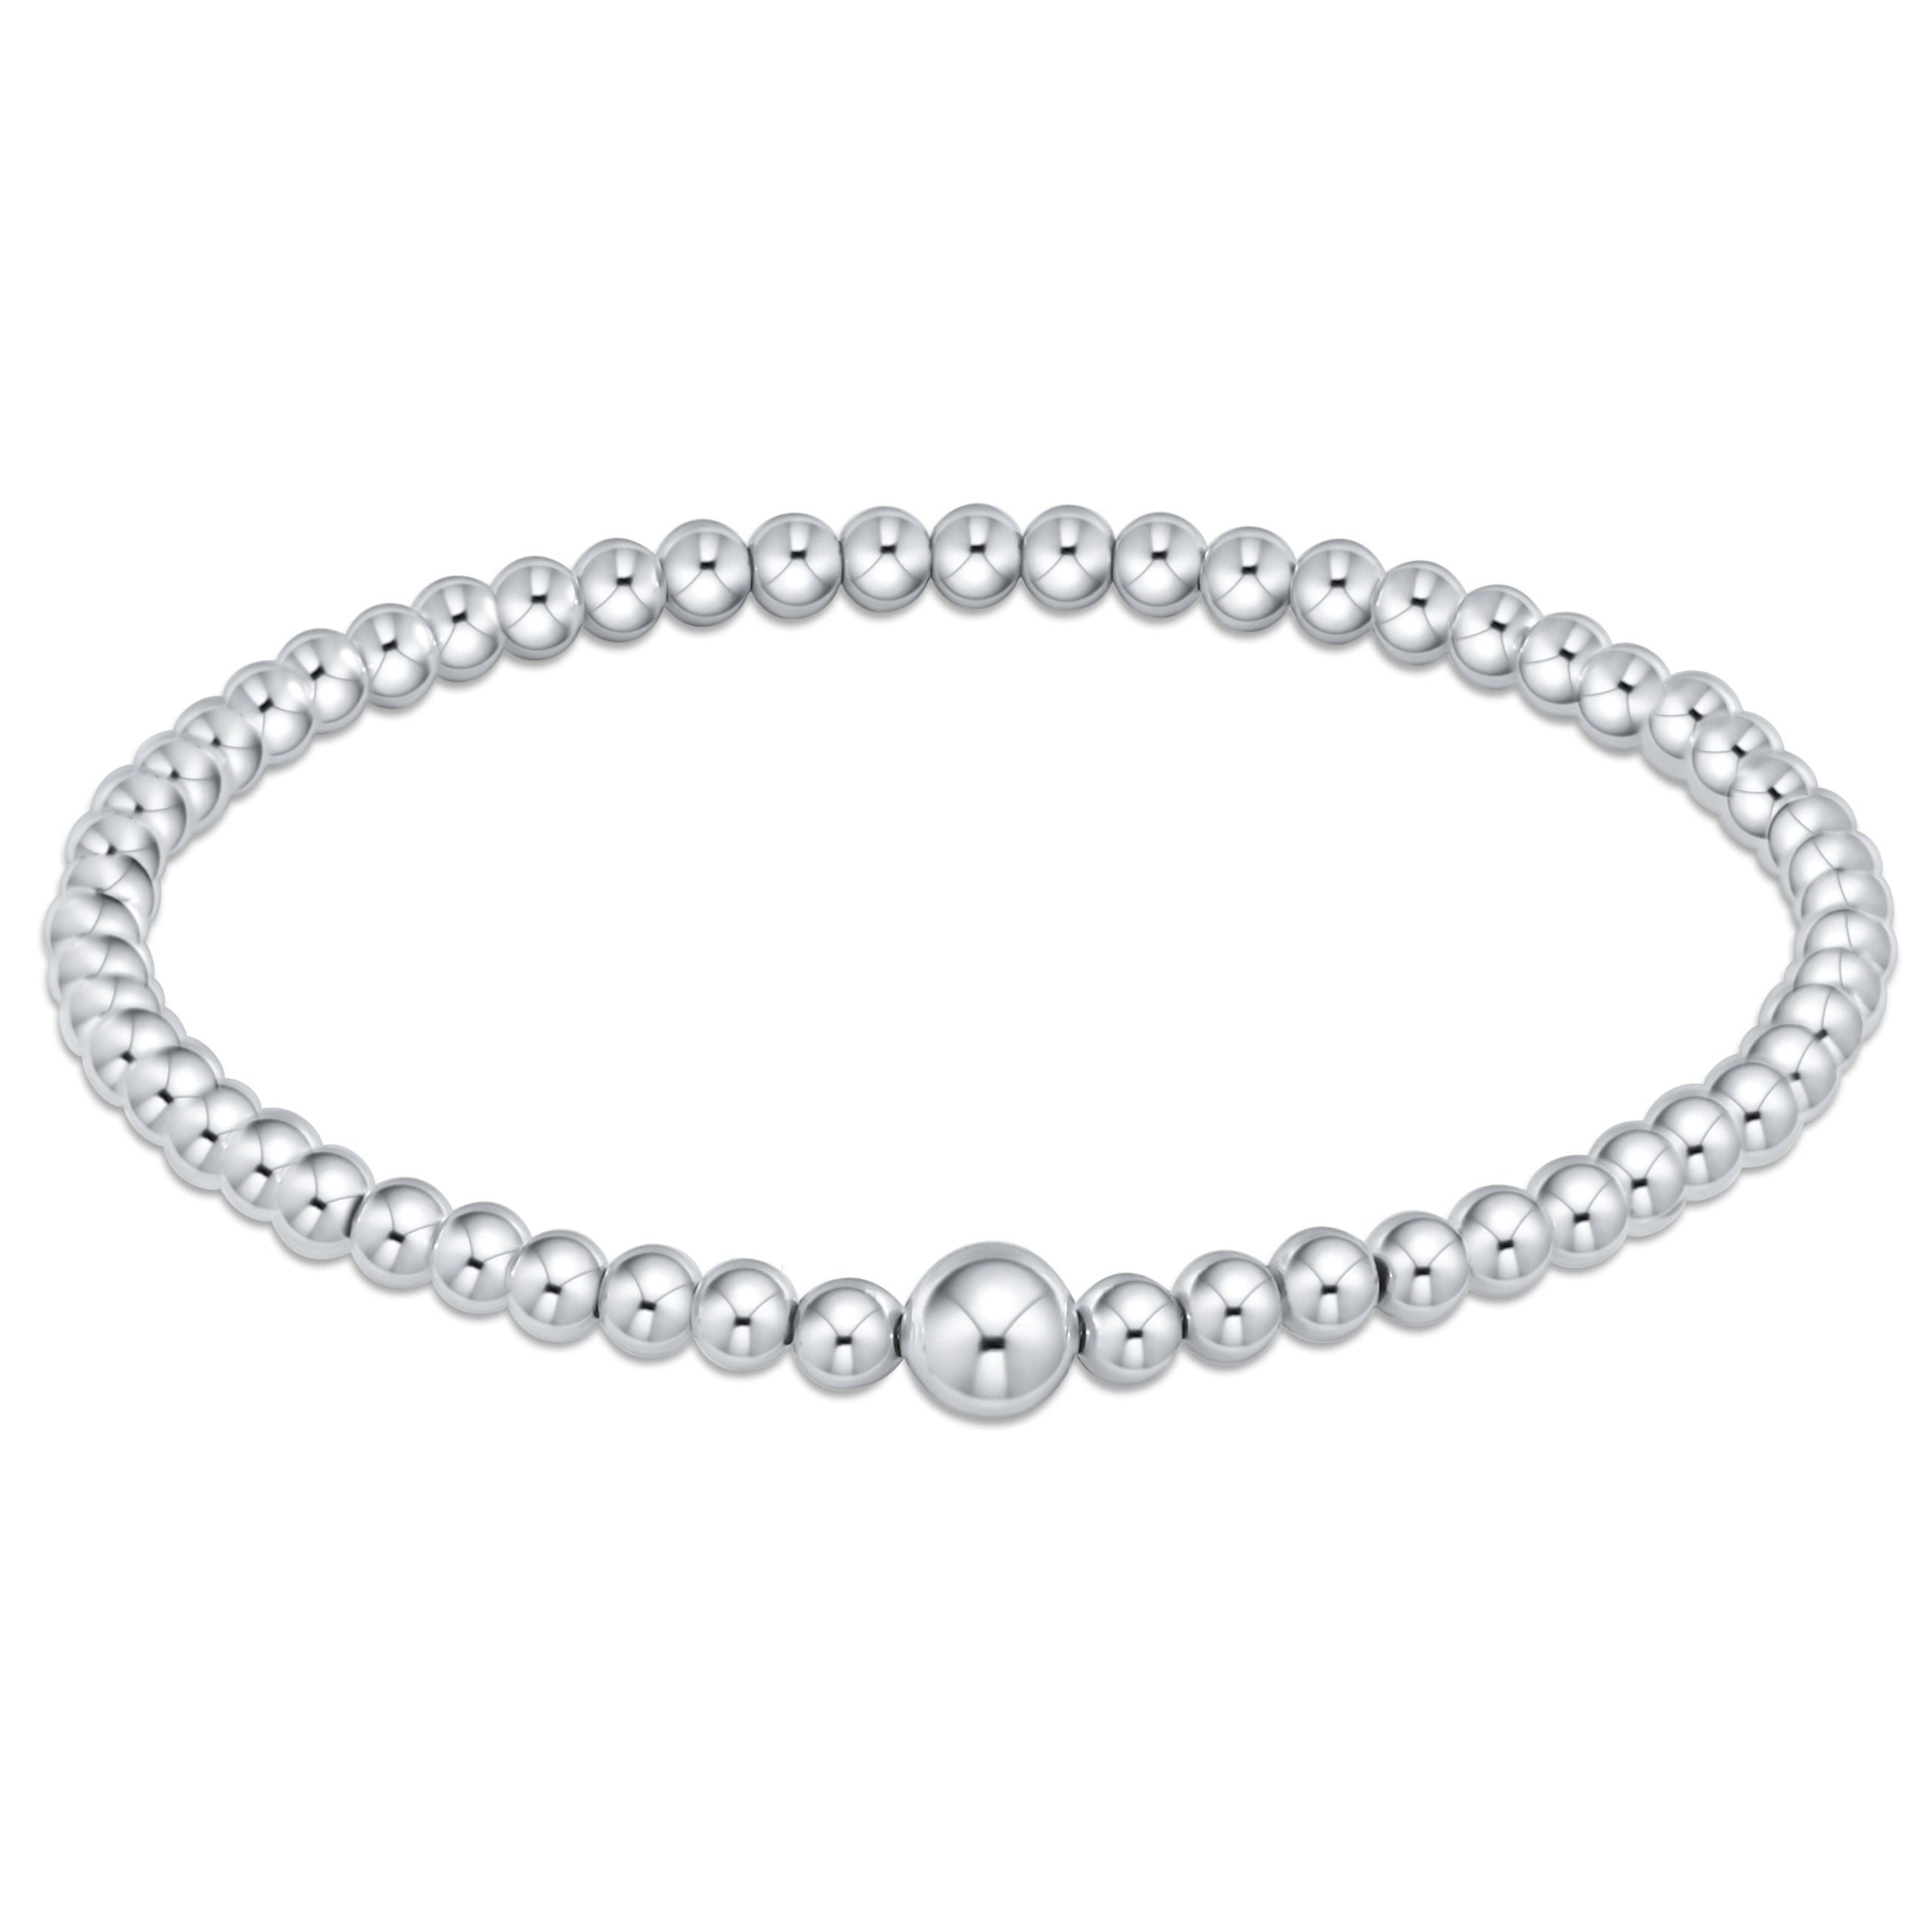 4mm Diamond Beads Bracelet White Gold 8